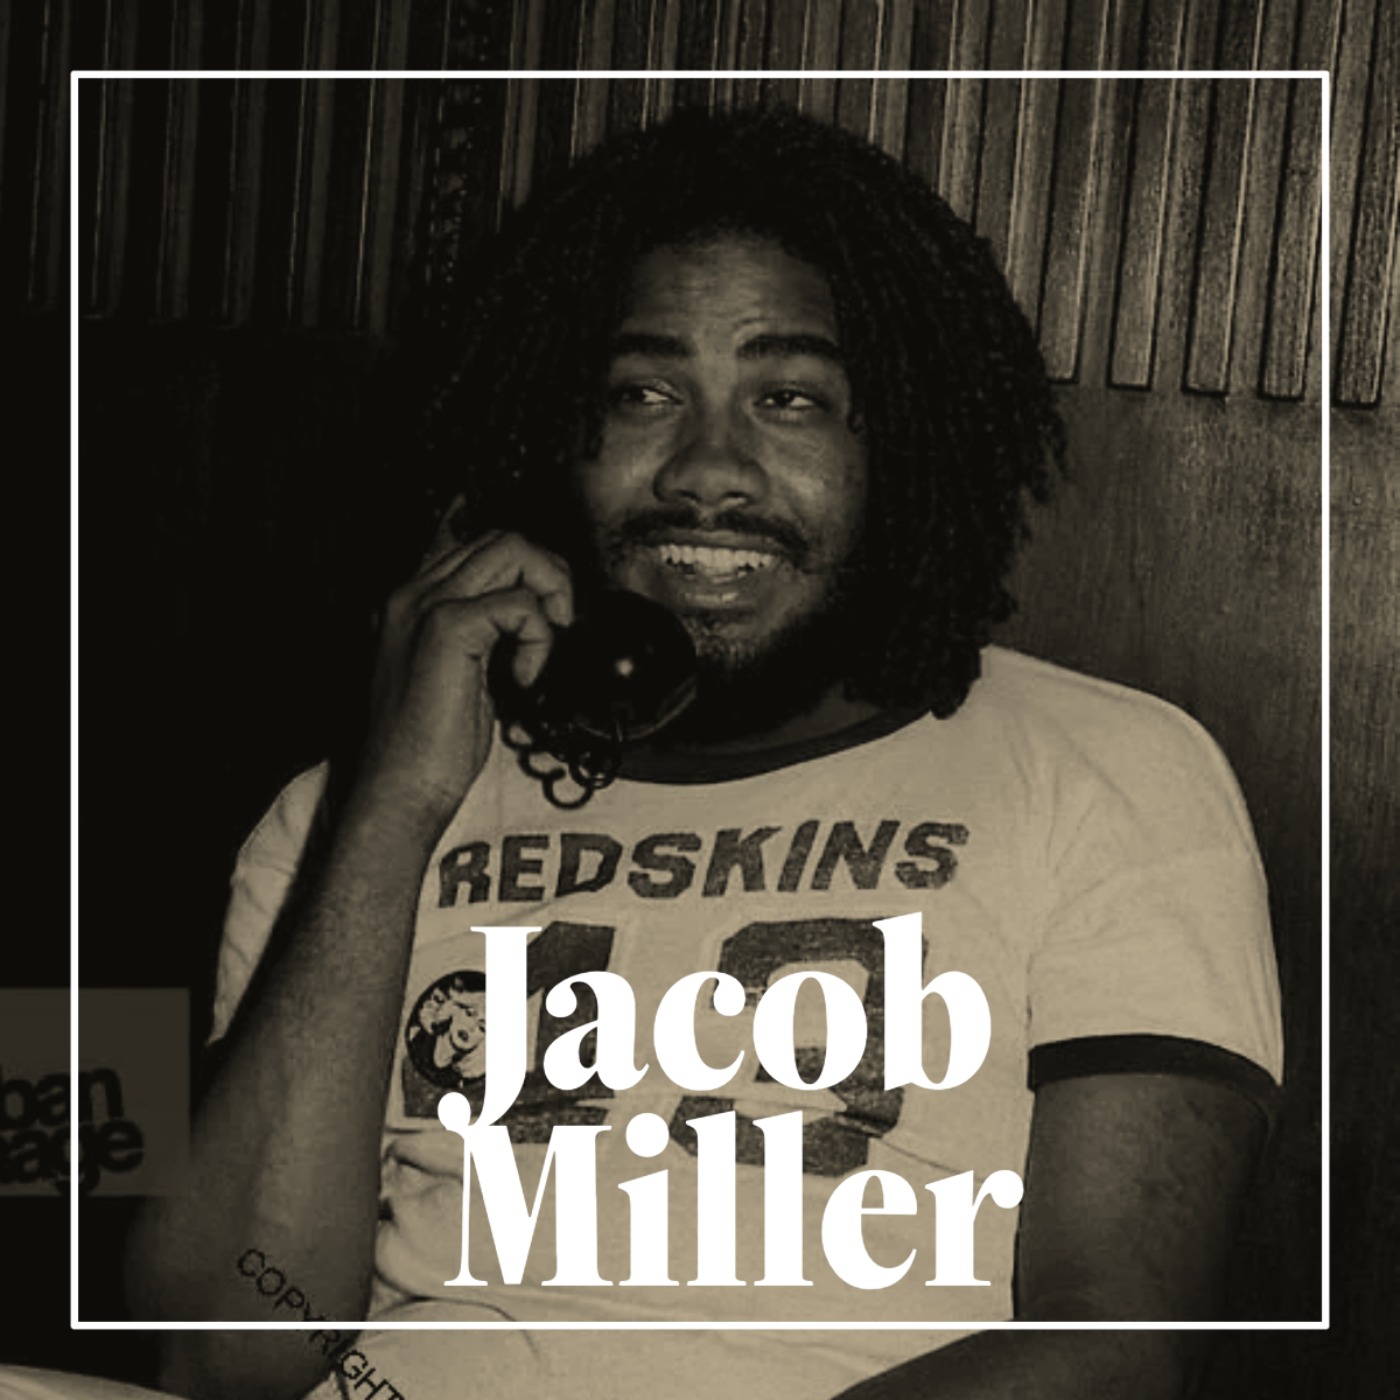 5. Jacob Miller